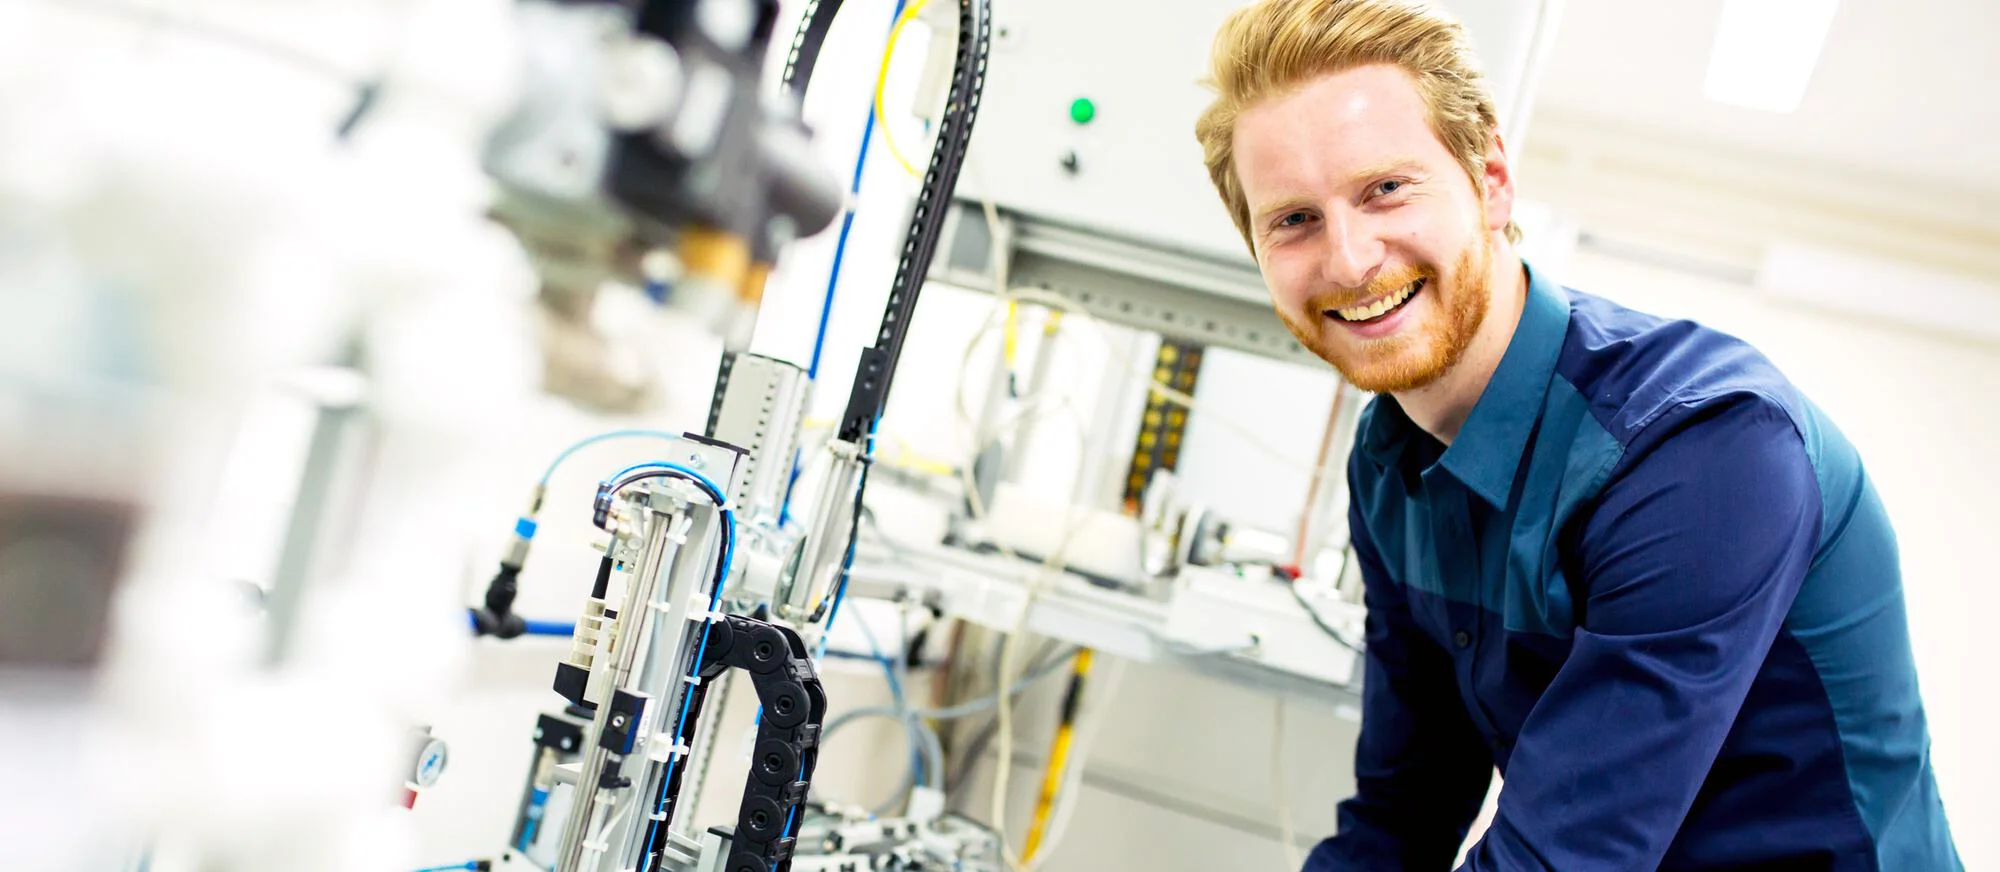 Das Bild zeigt einen lächelnden Mann mit rotem Haar und Bart, der ein blaues Hemd trägt und neben einer komplexen technischen Ausrüstung oder einem Roboter in einer hellen Laborumgebung steht.